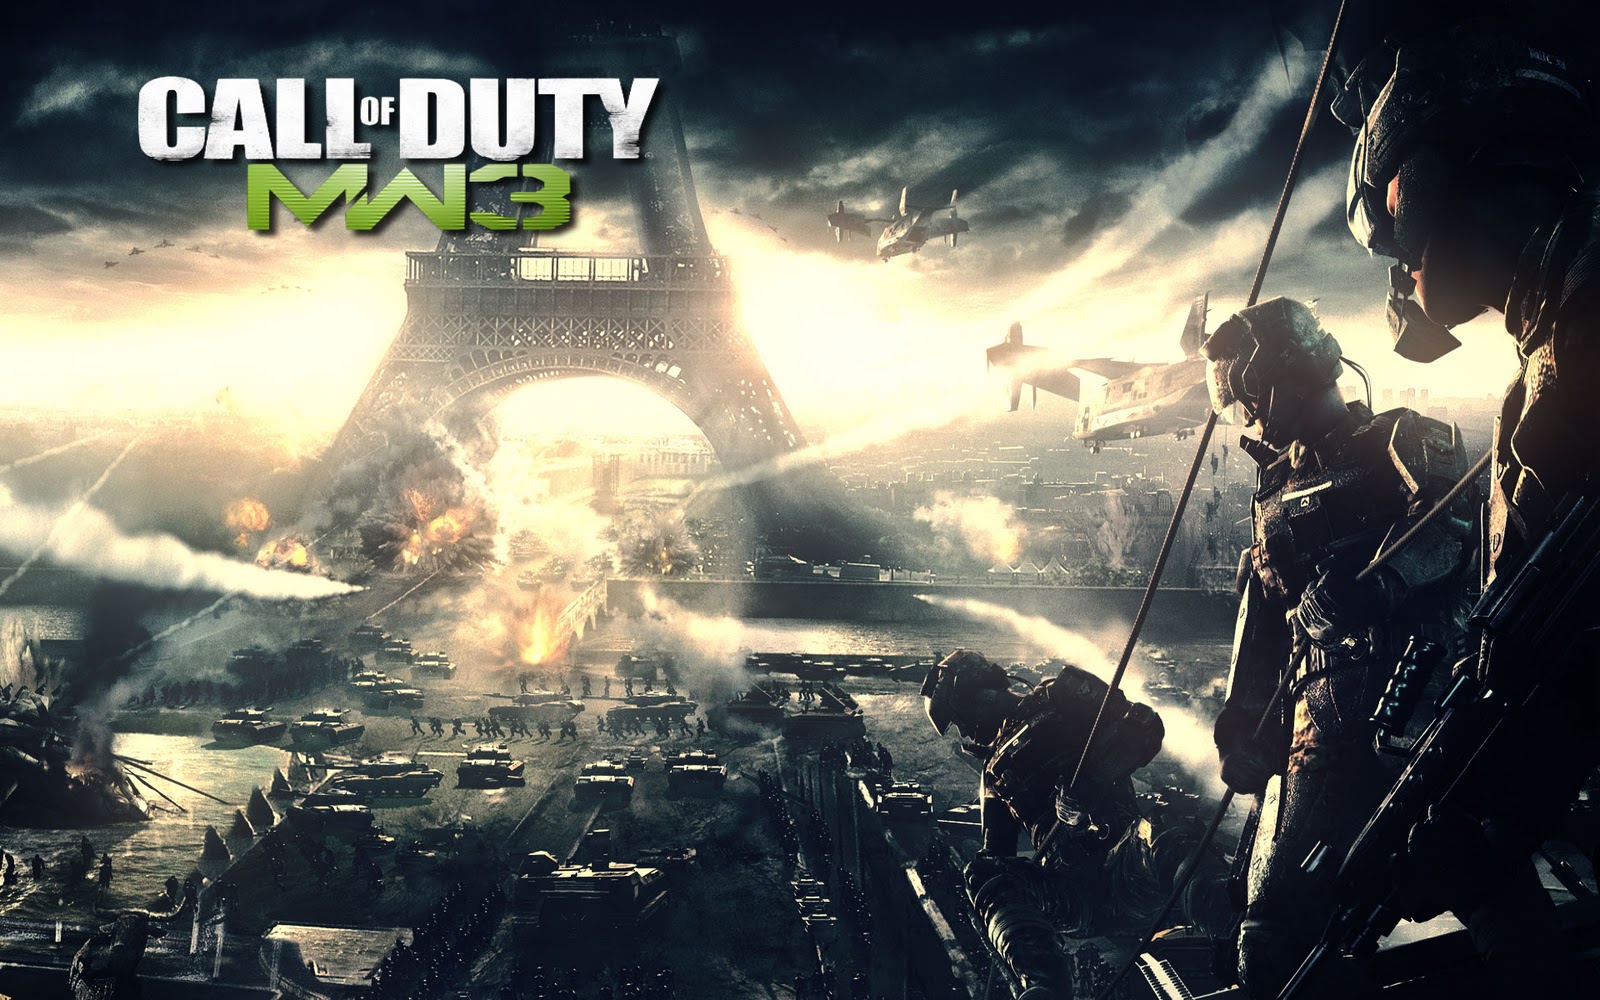 47+] Call Of Duty 4 Wallpaper - WallpaperSafari